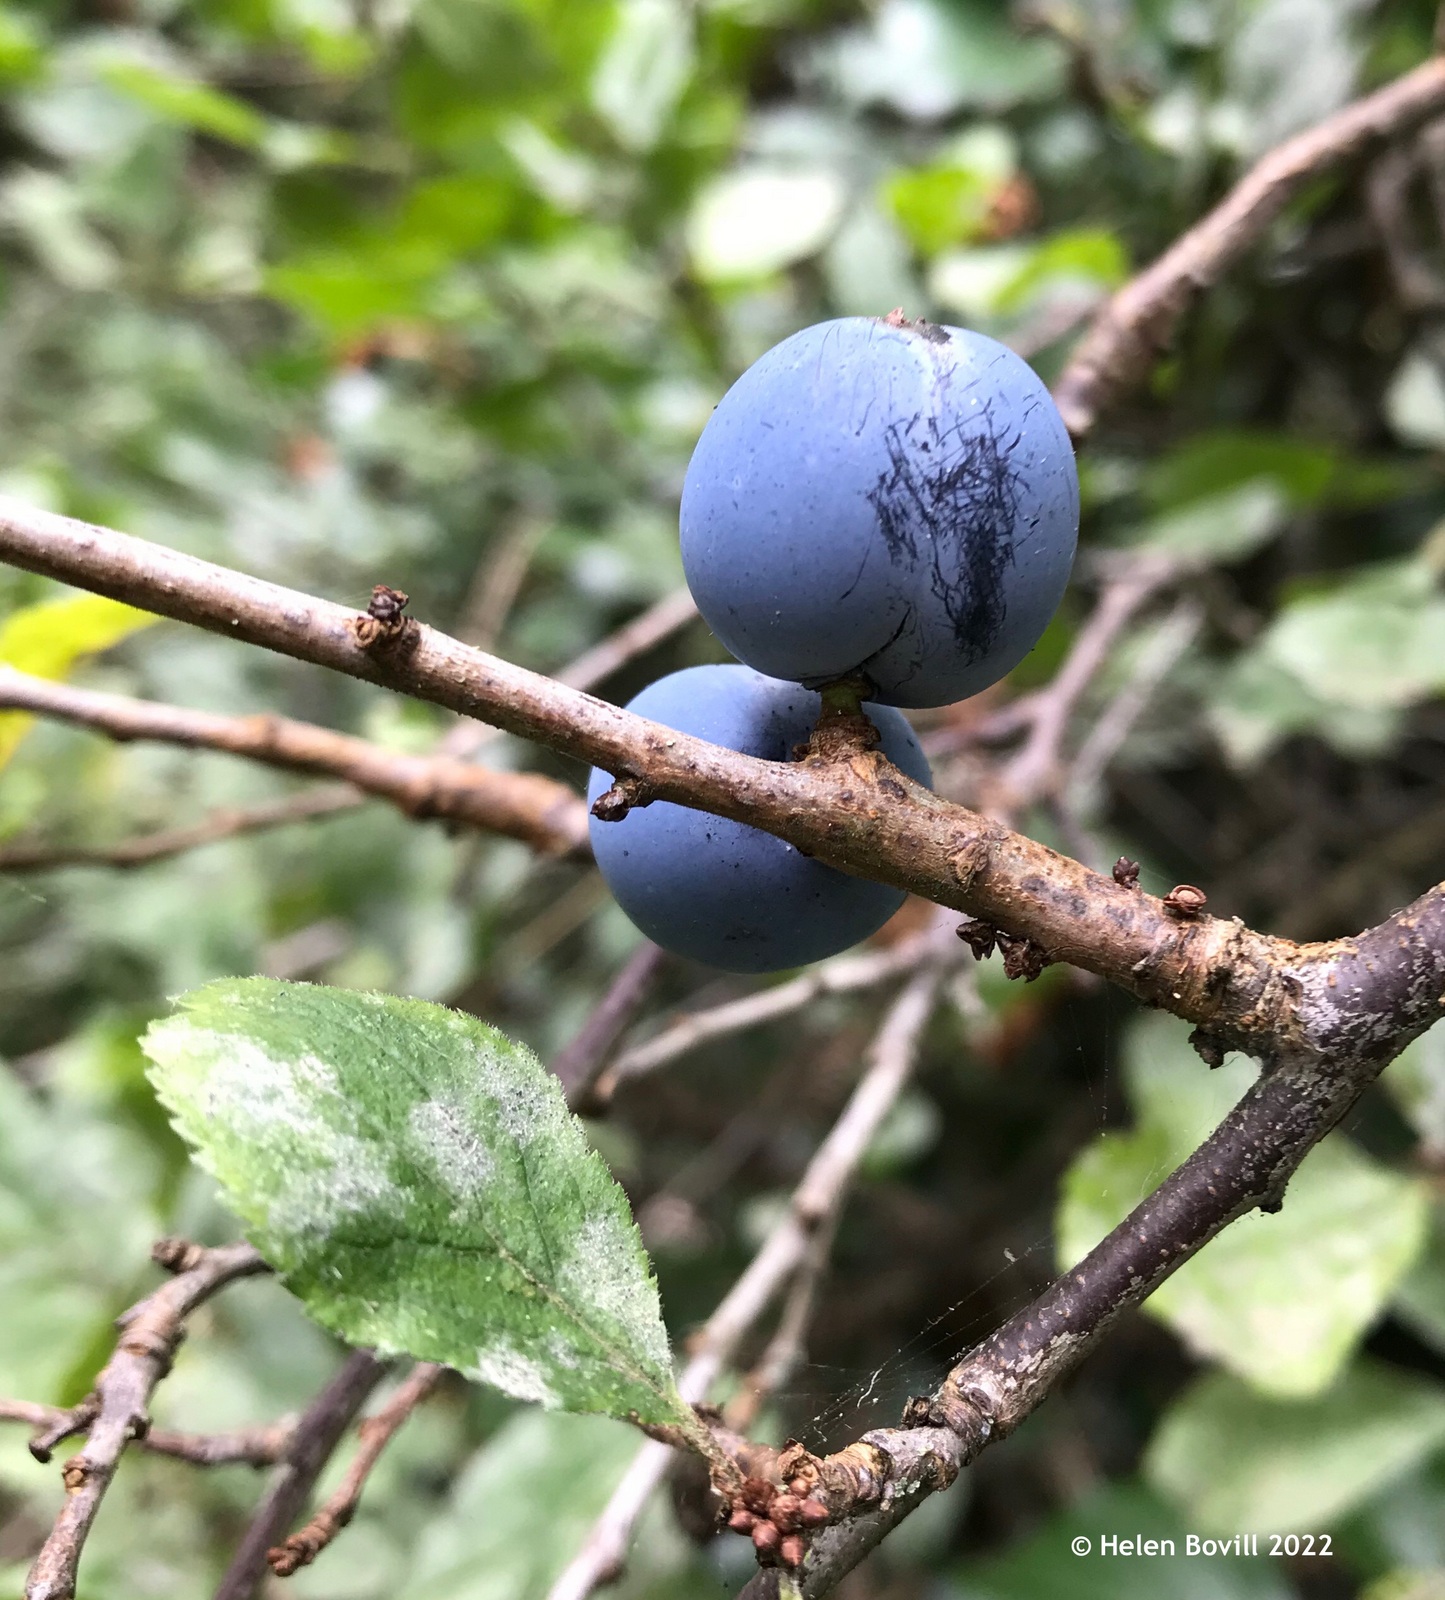 Blackthorn or Sloe Berries in the cemetery